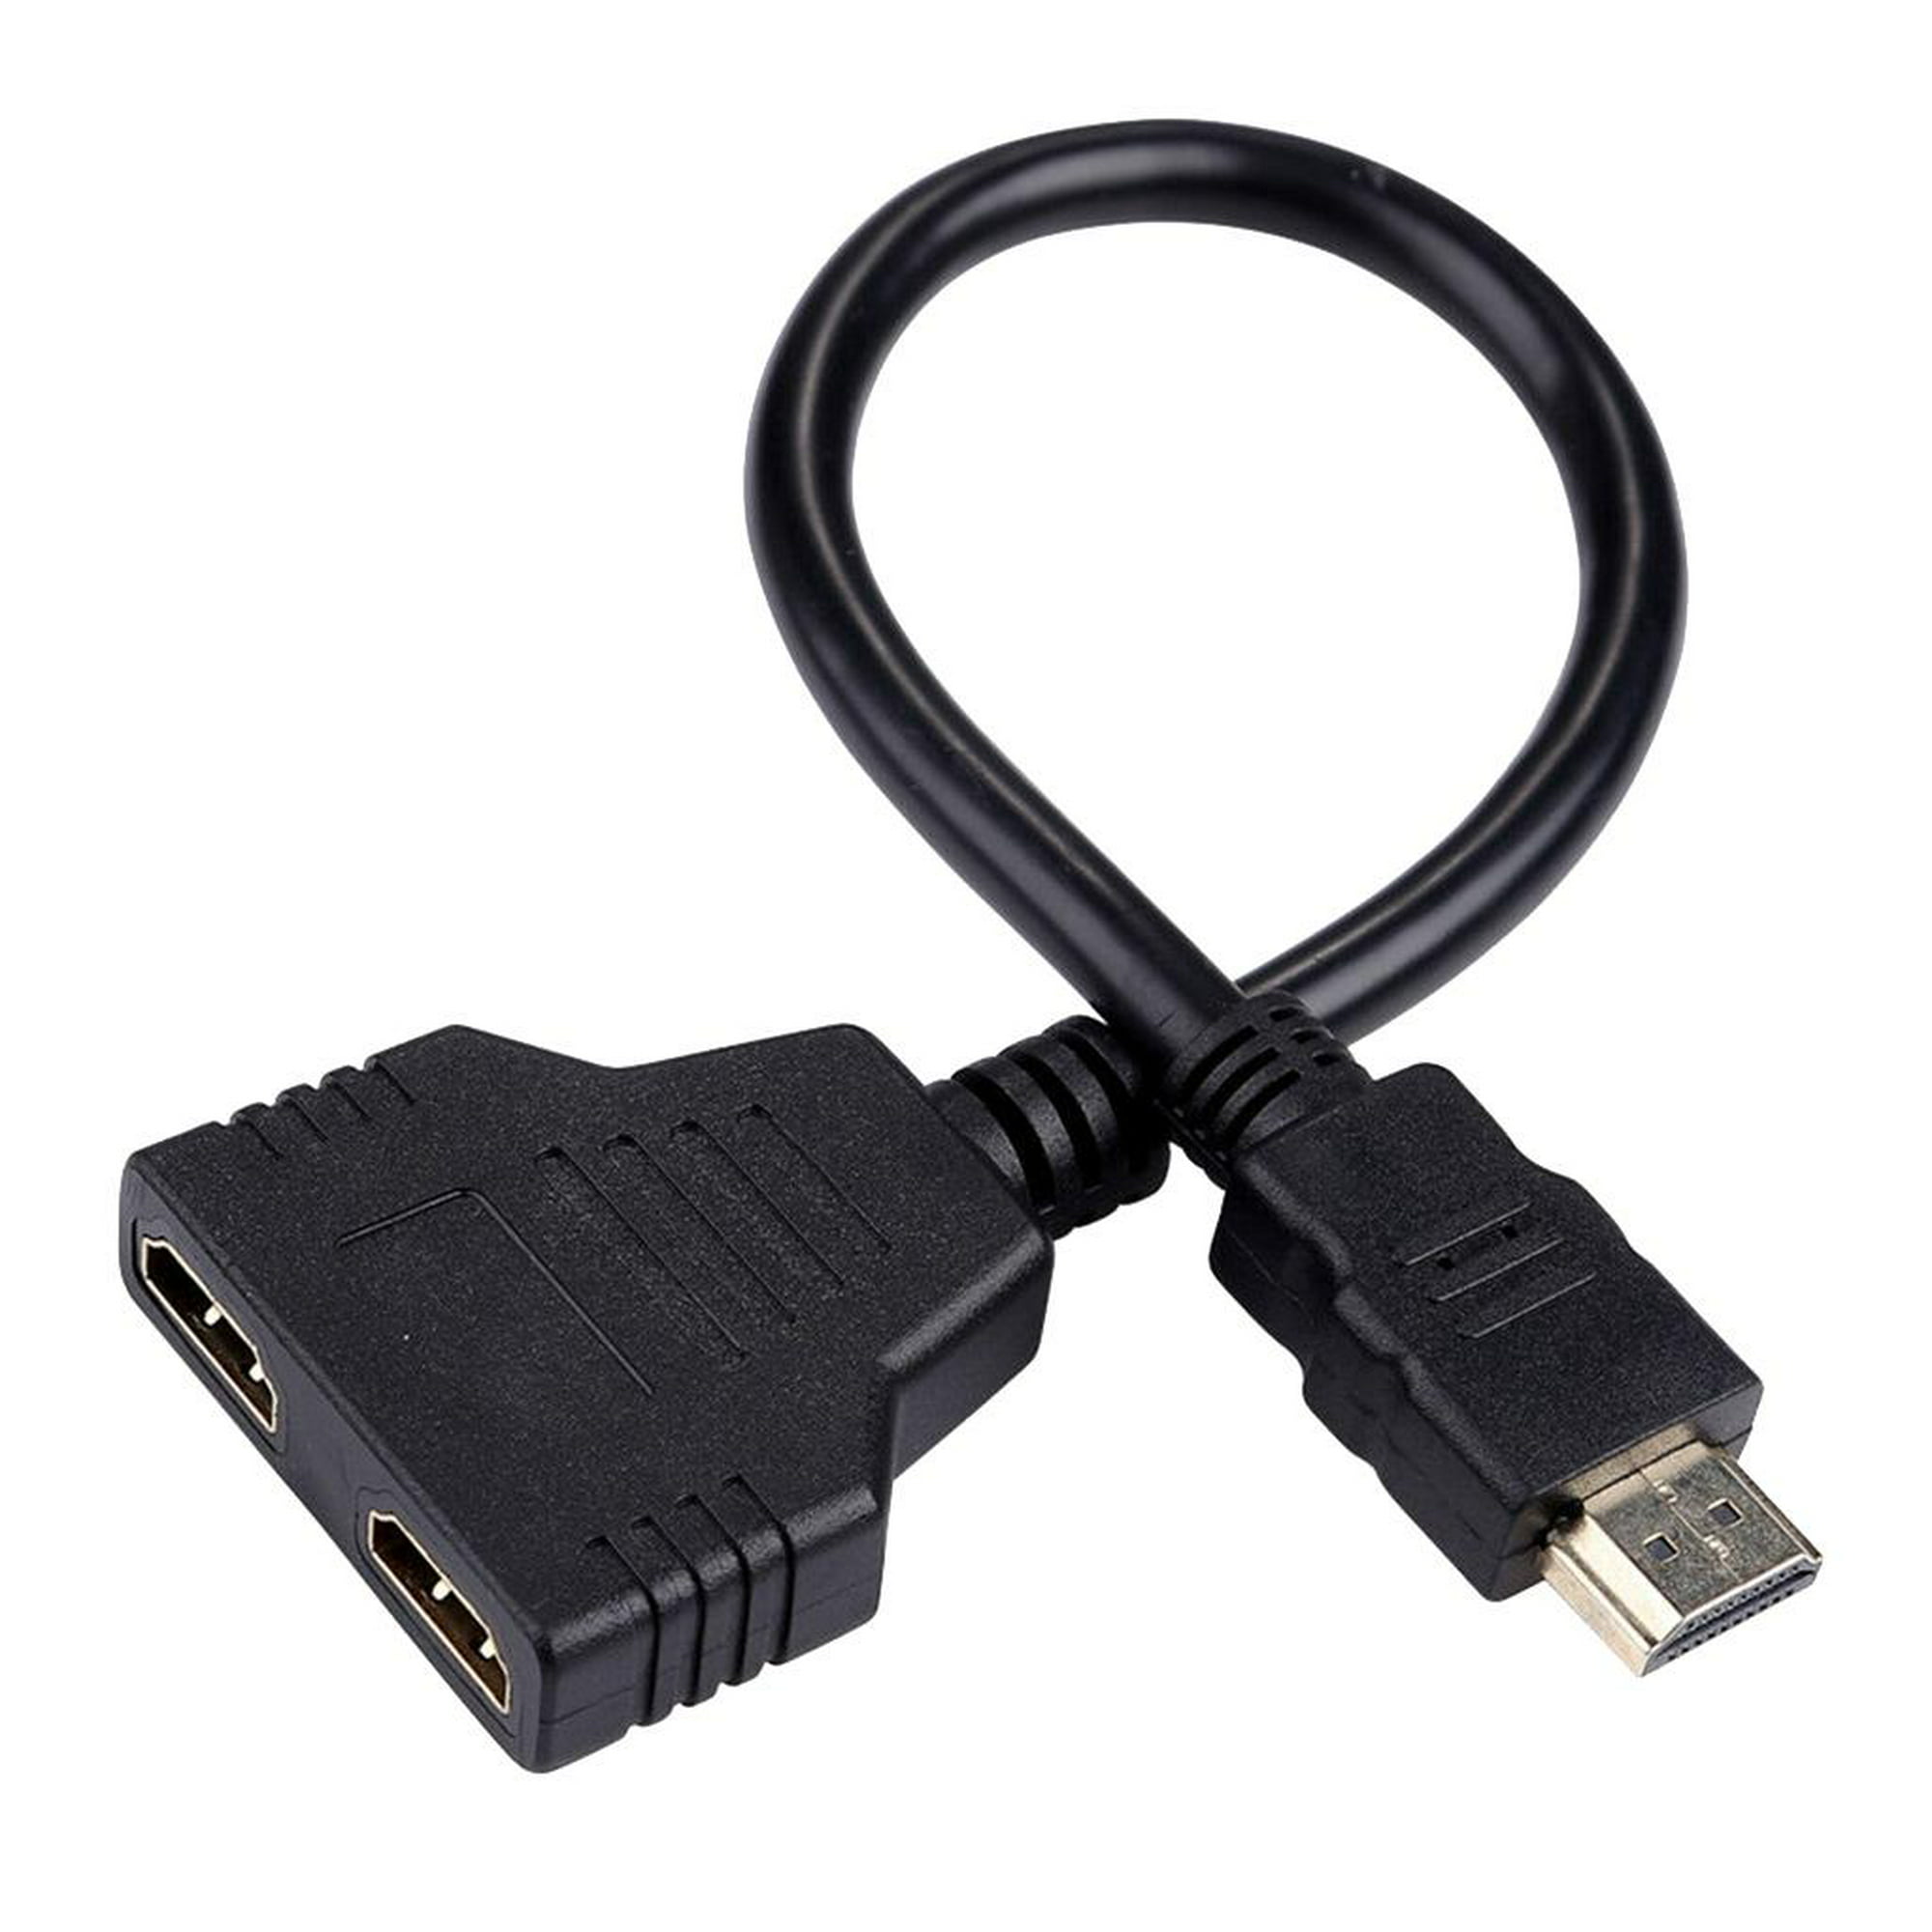  Cable divisor HDMI 1-2 Cable HDMI doble HDMI 1 en 2 salidas 1-2  Línea de conversión de pantalla dividida HDMI Versión 1.4 Soporta Ethernet  Soporta visualización simultánea de dos monitores del